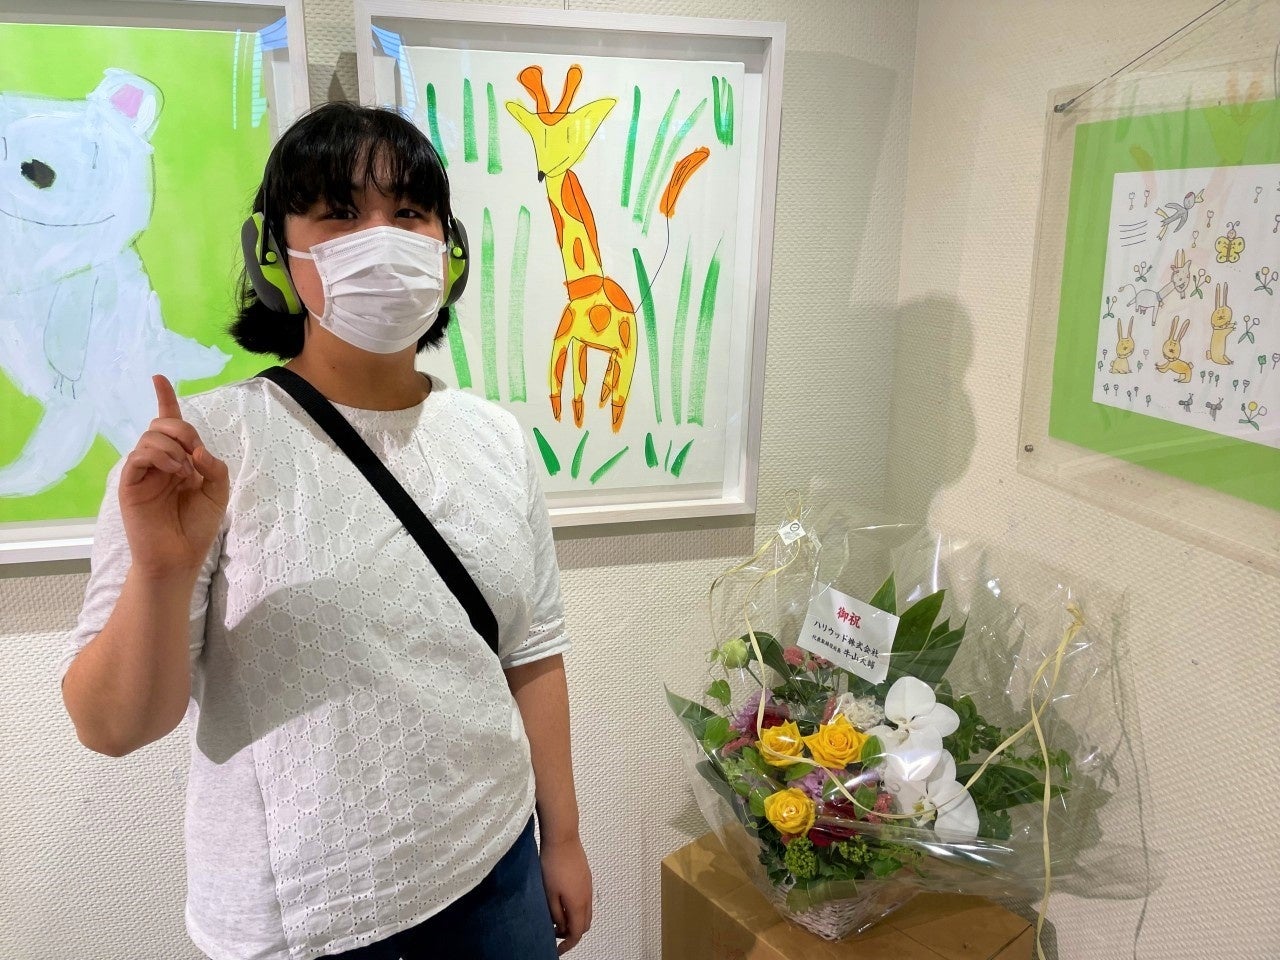 ハリウッドの商品配送箱のイラストを手掛けたアーティスト 花島愛弥さんの作品展が杏林大学医学部付属病院で開催中